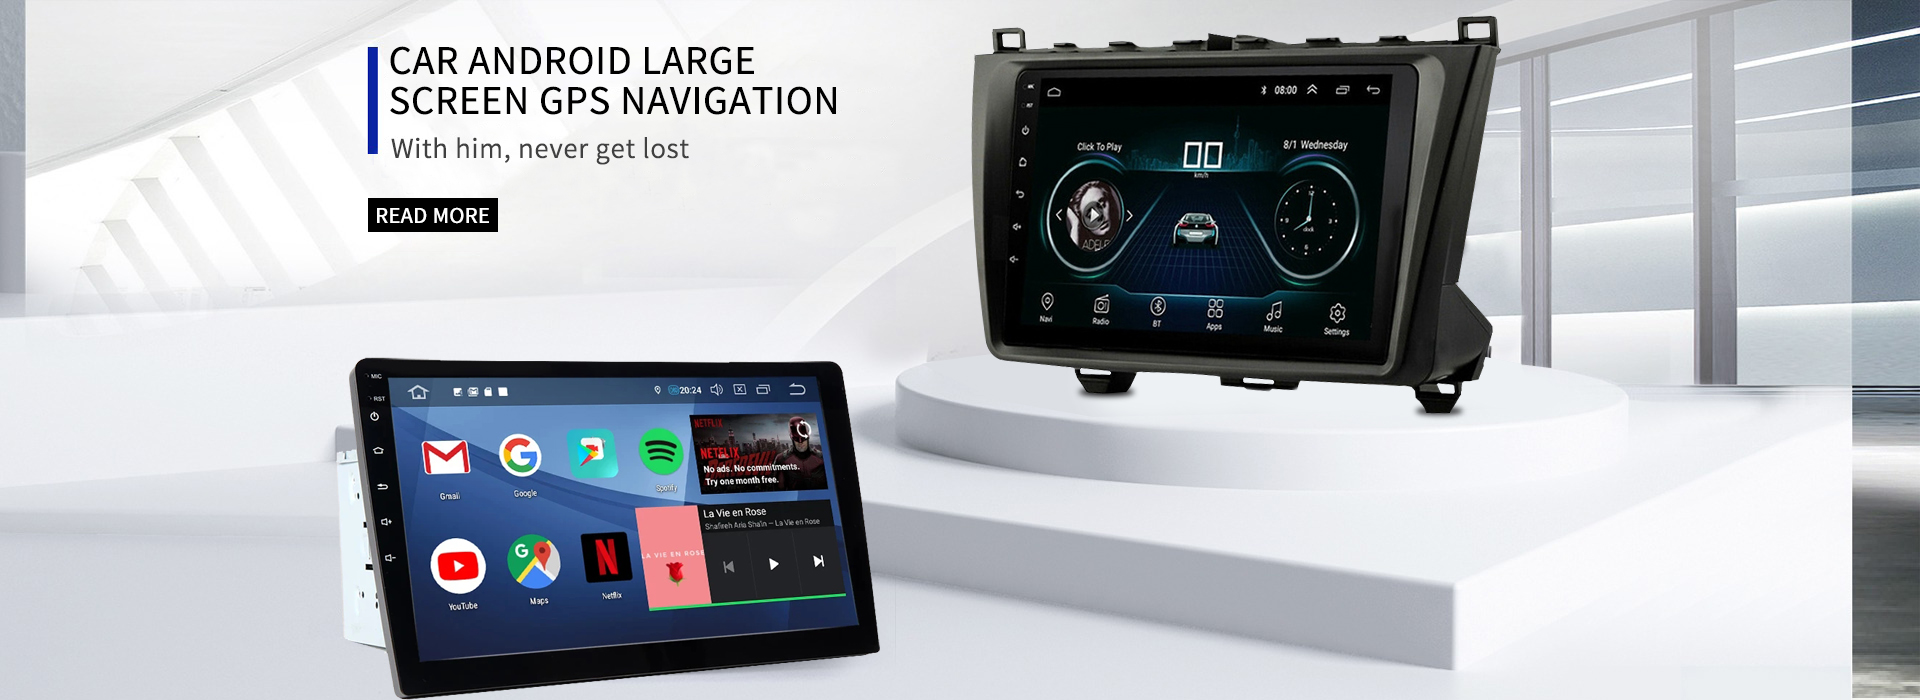 Navigacion GPS me ekran të madh në makinë Android